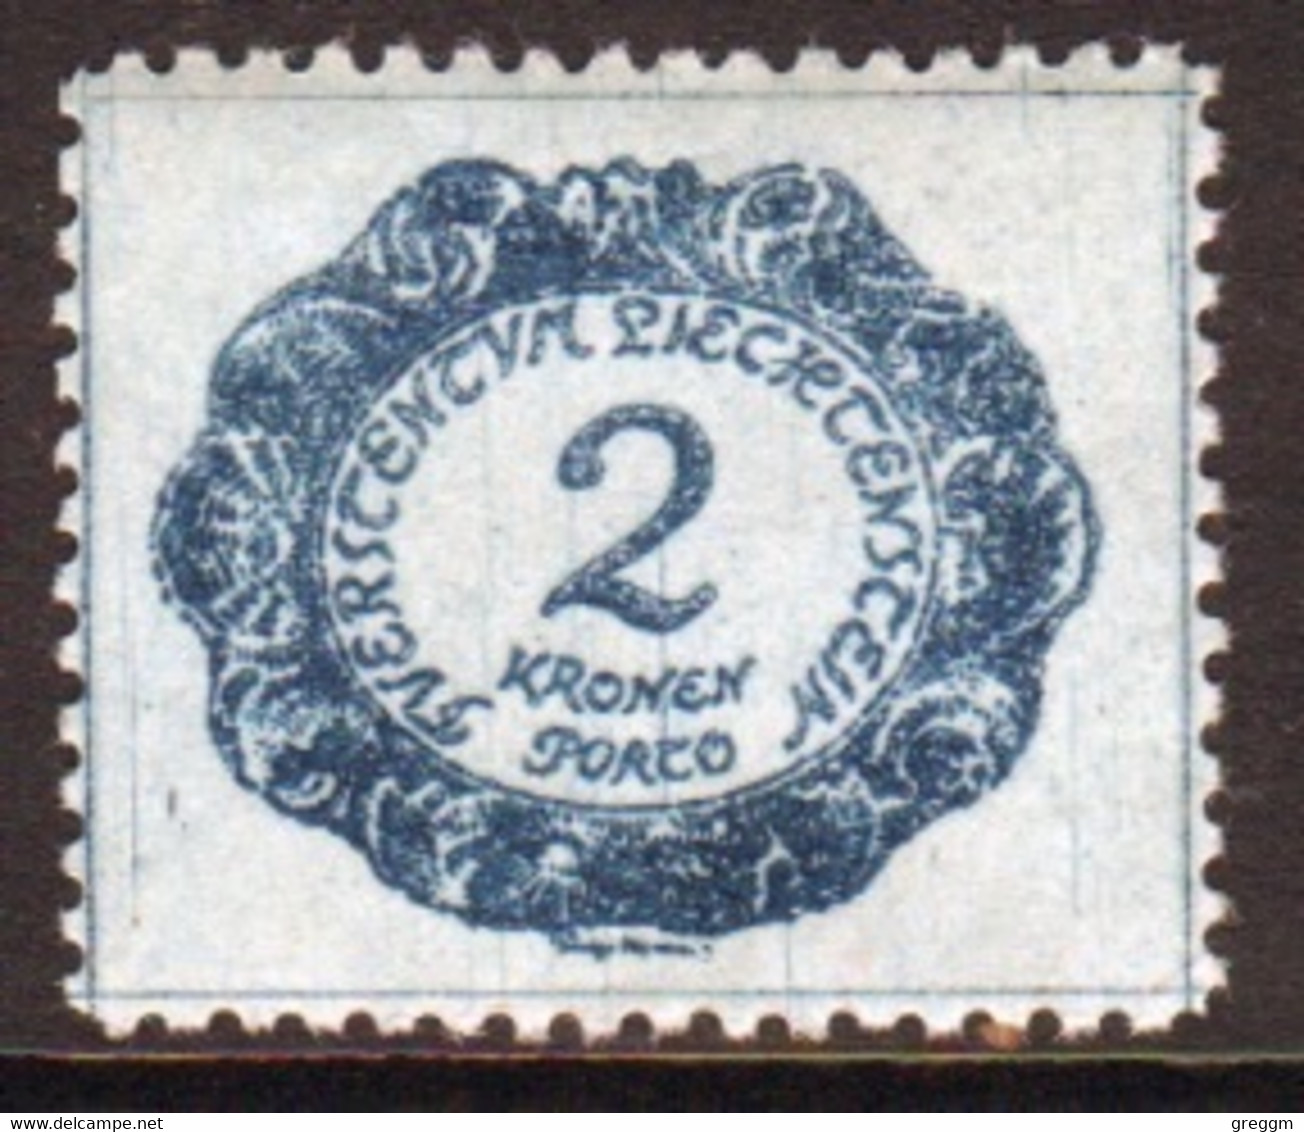 Liechtenstein 1920 Single 2k  Postage Due Stamp In Unmounted Mint Condition. - Taxe